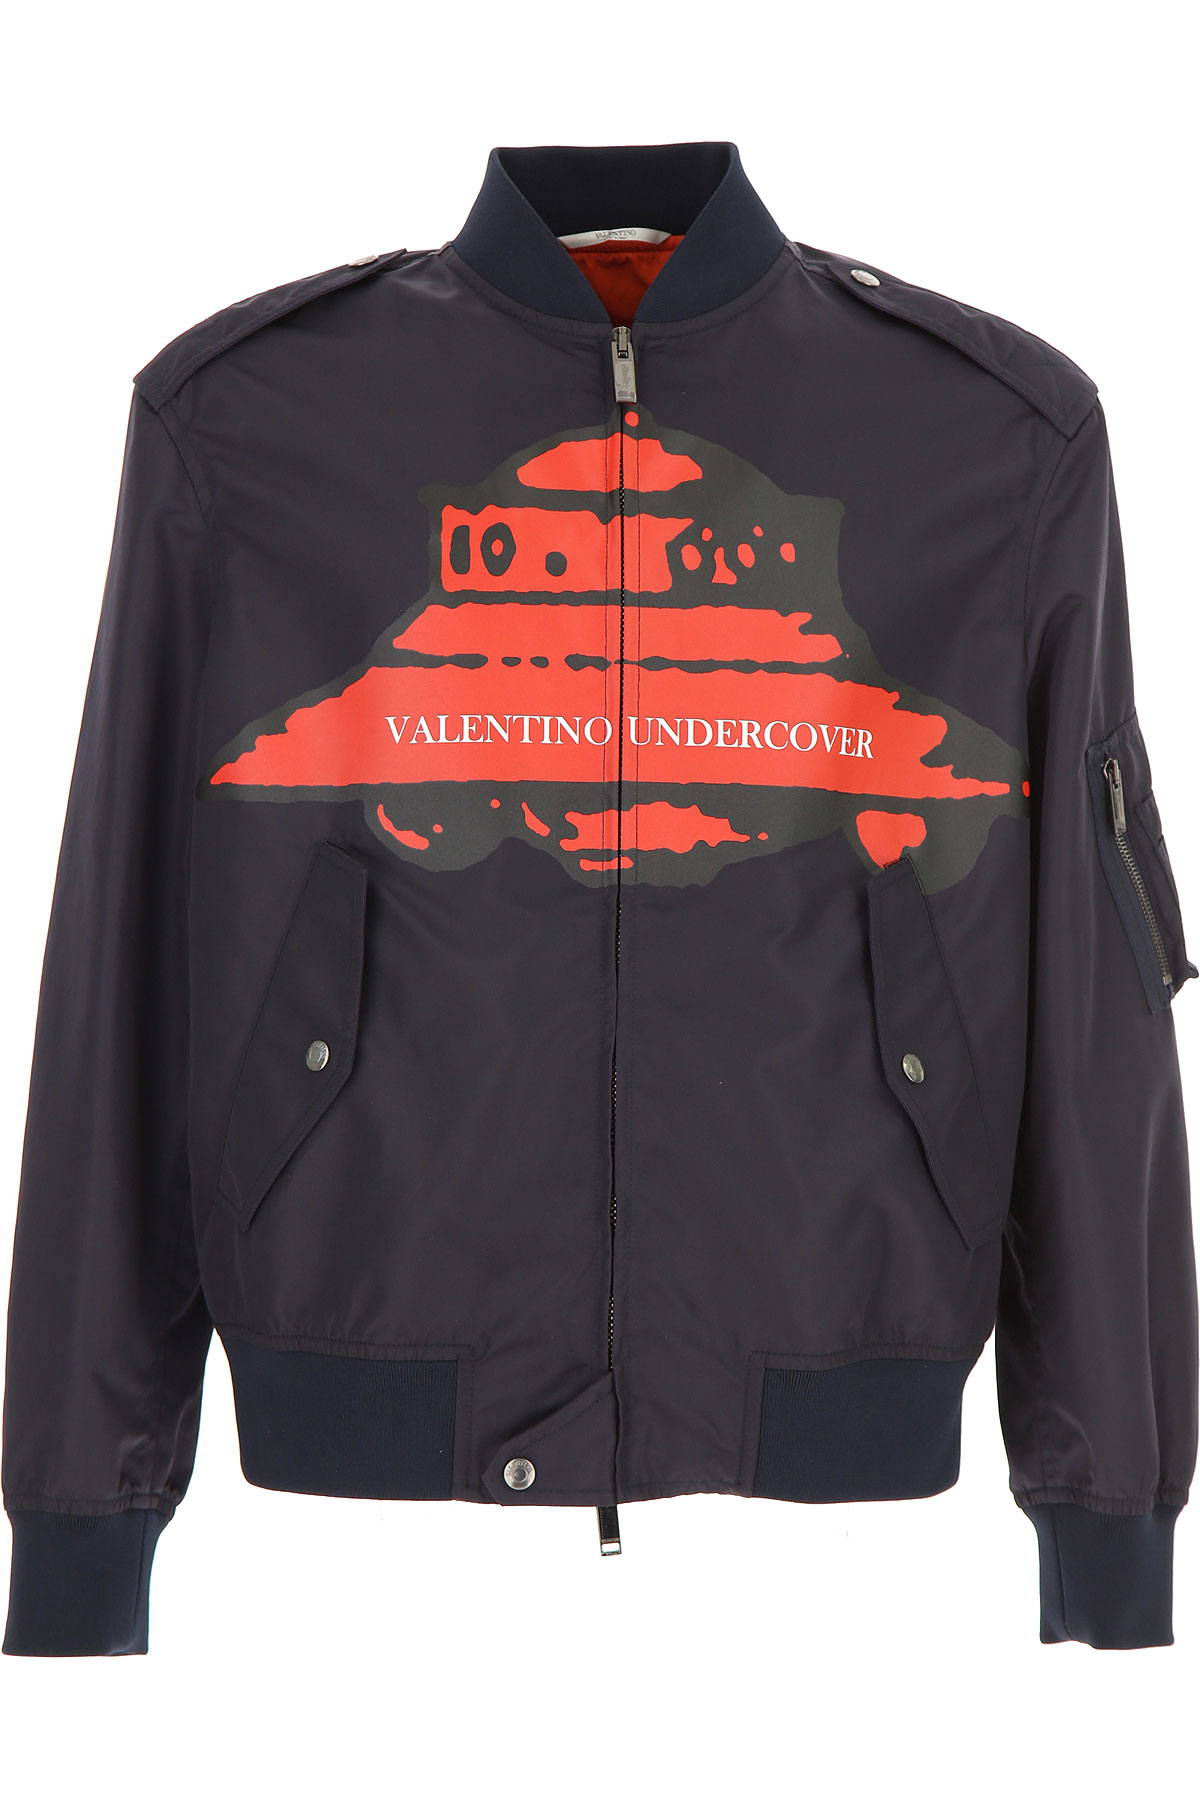 Valentino Jacke für Herren Günstig im Sale, Dunkel Marineblau, Polyamid, 2017, L M S XXL